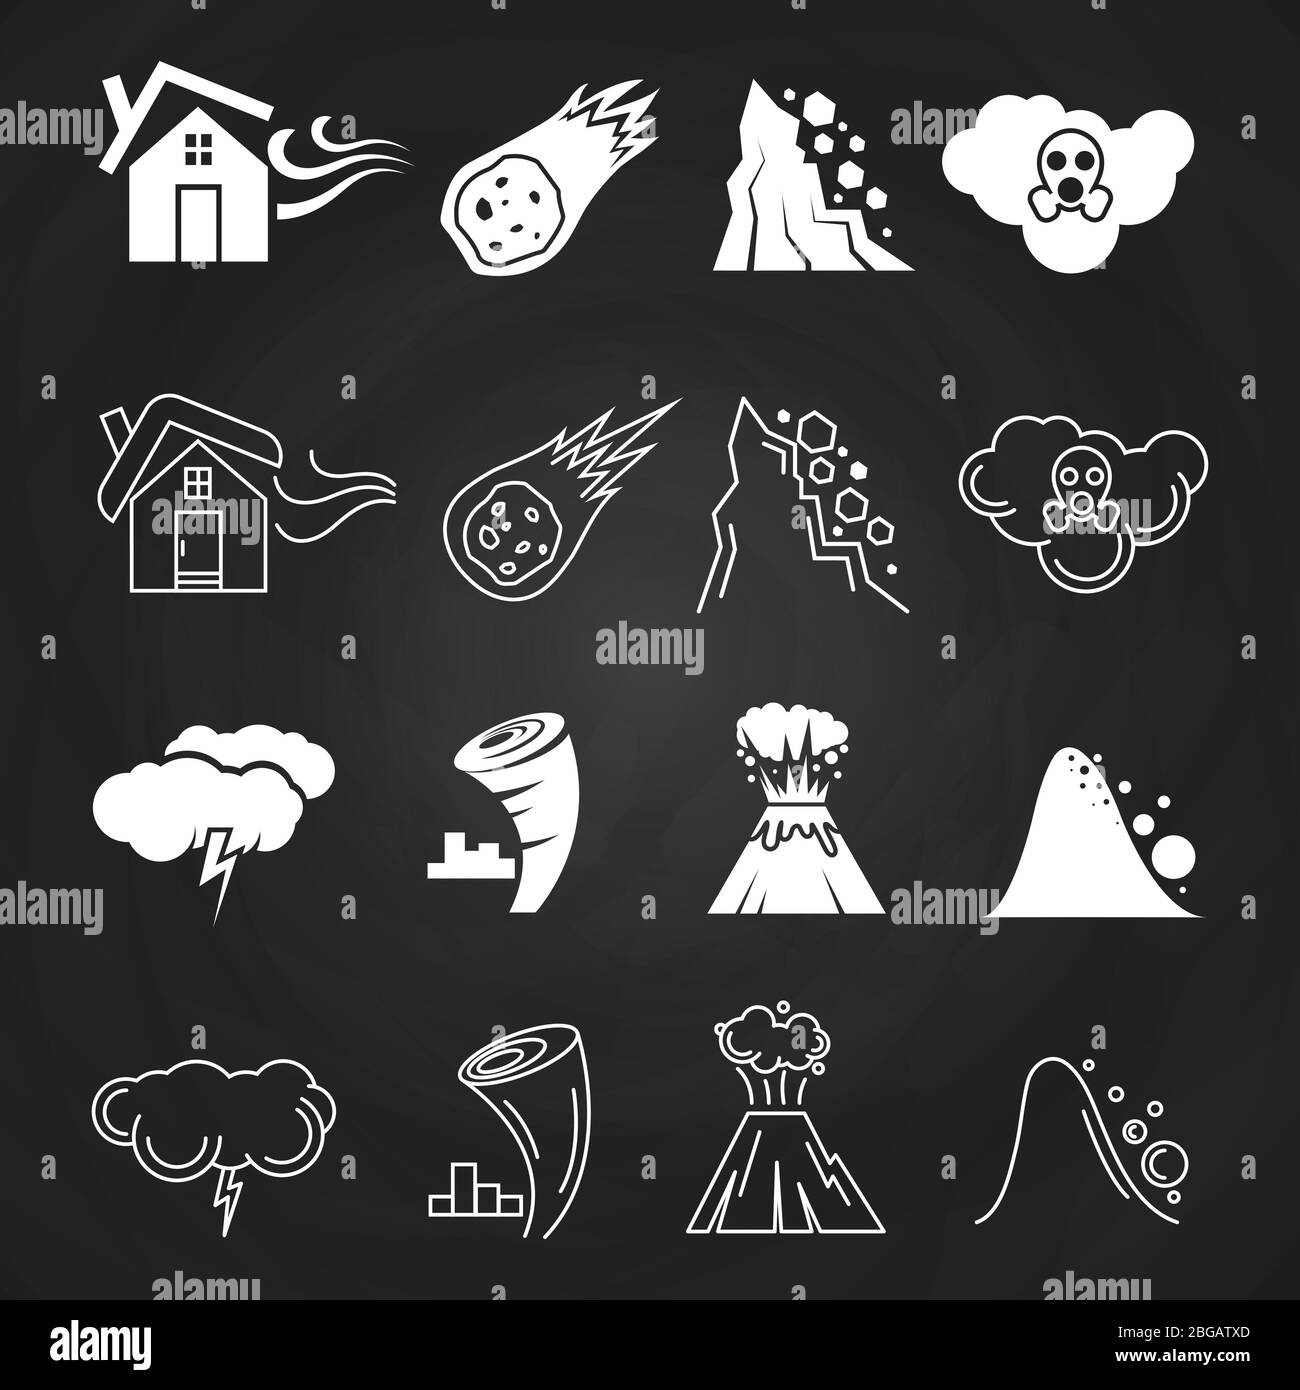 Symbole für Naturkatastrophen auf der schwarzen Tafel im monochromen Stil. Vektorgrafik Stock Vektor